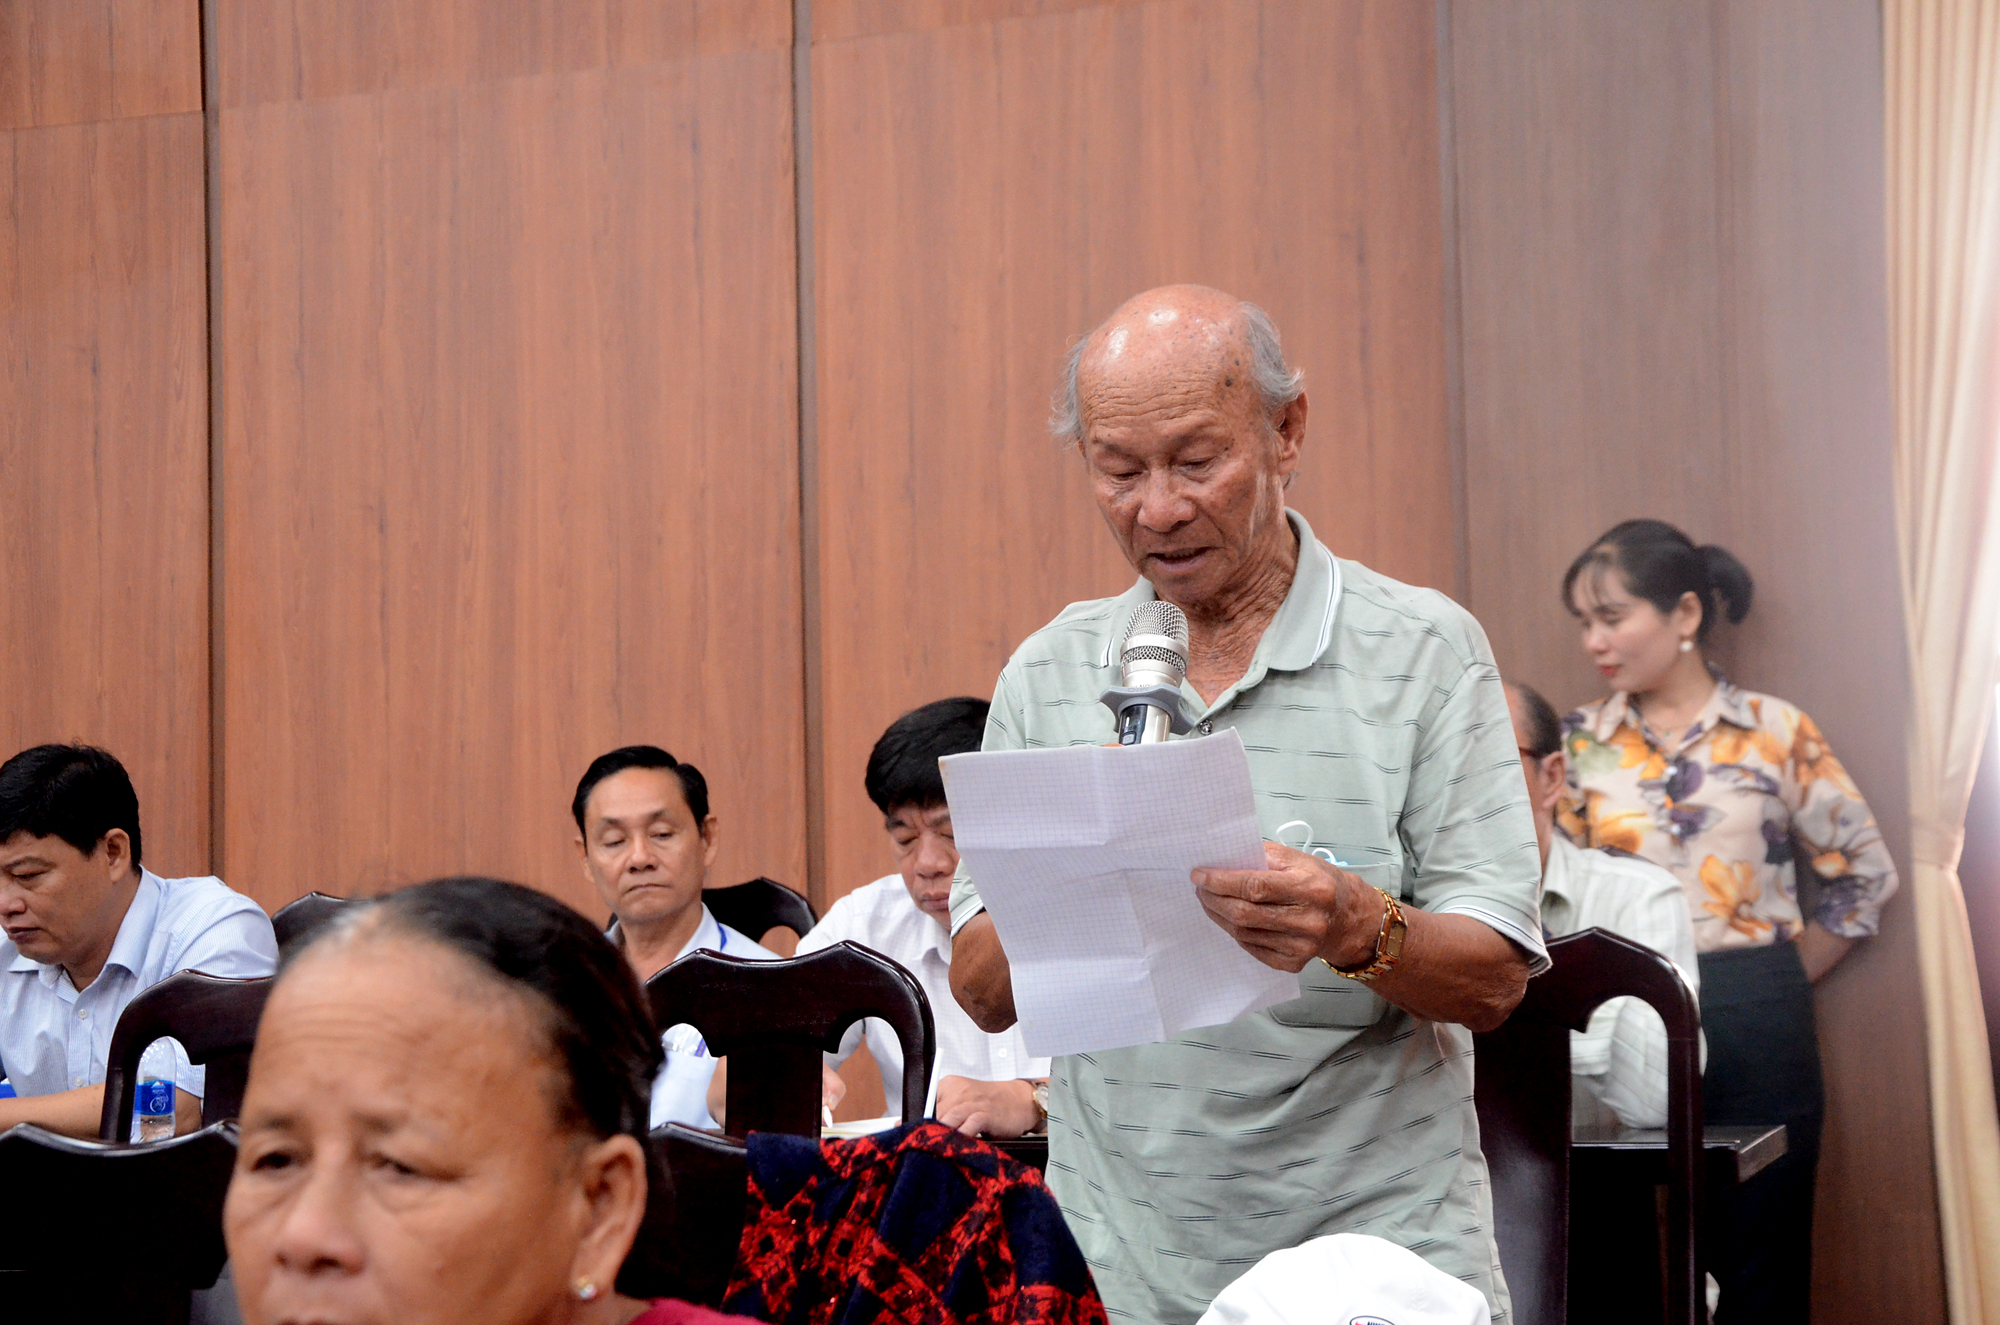 Cử tri Nguyễn Văn Năm (thị trấn Phước Hải, huyện Đất Đỏ) kiến nghị về việc khu đất của gia đình chậm được cấp giấy chứng nhận quyền sử dụng đất.